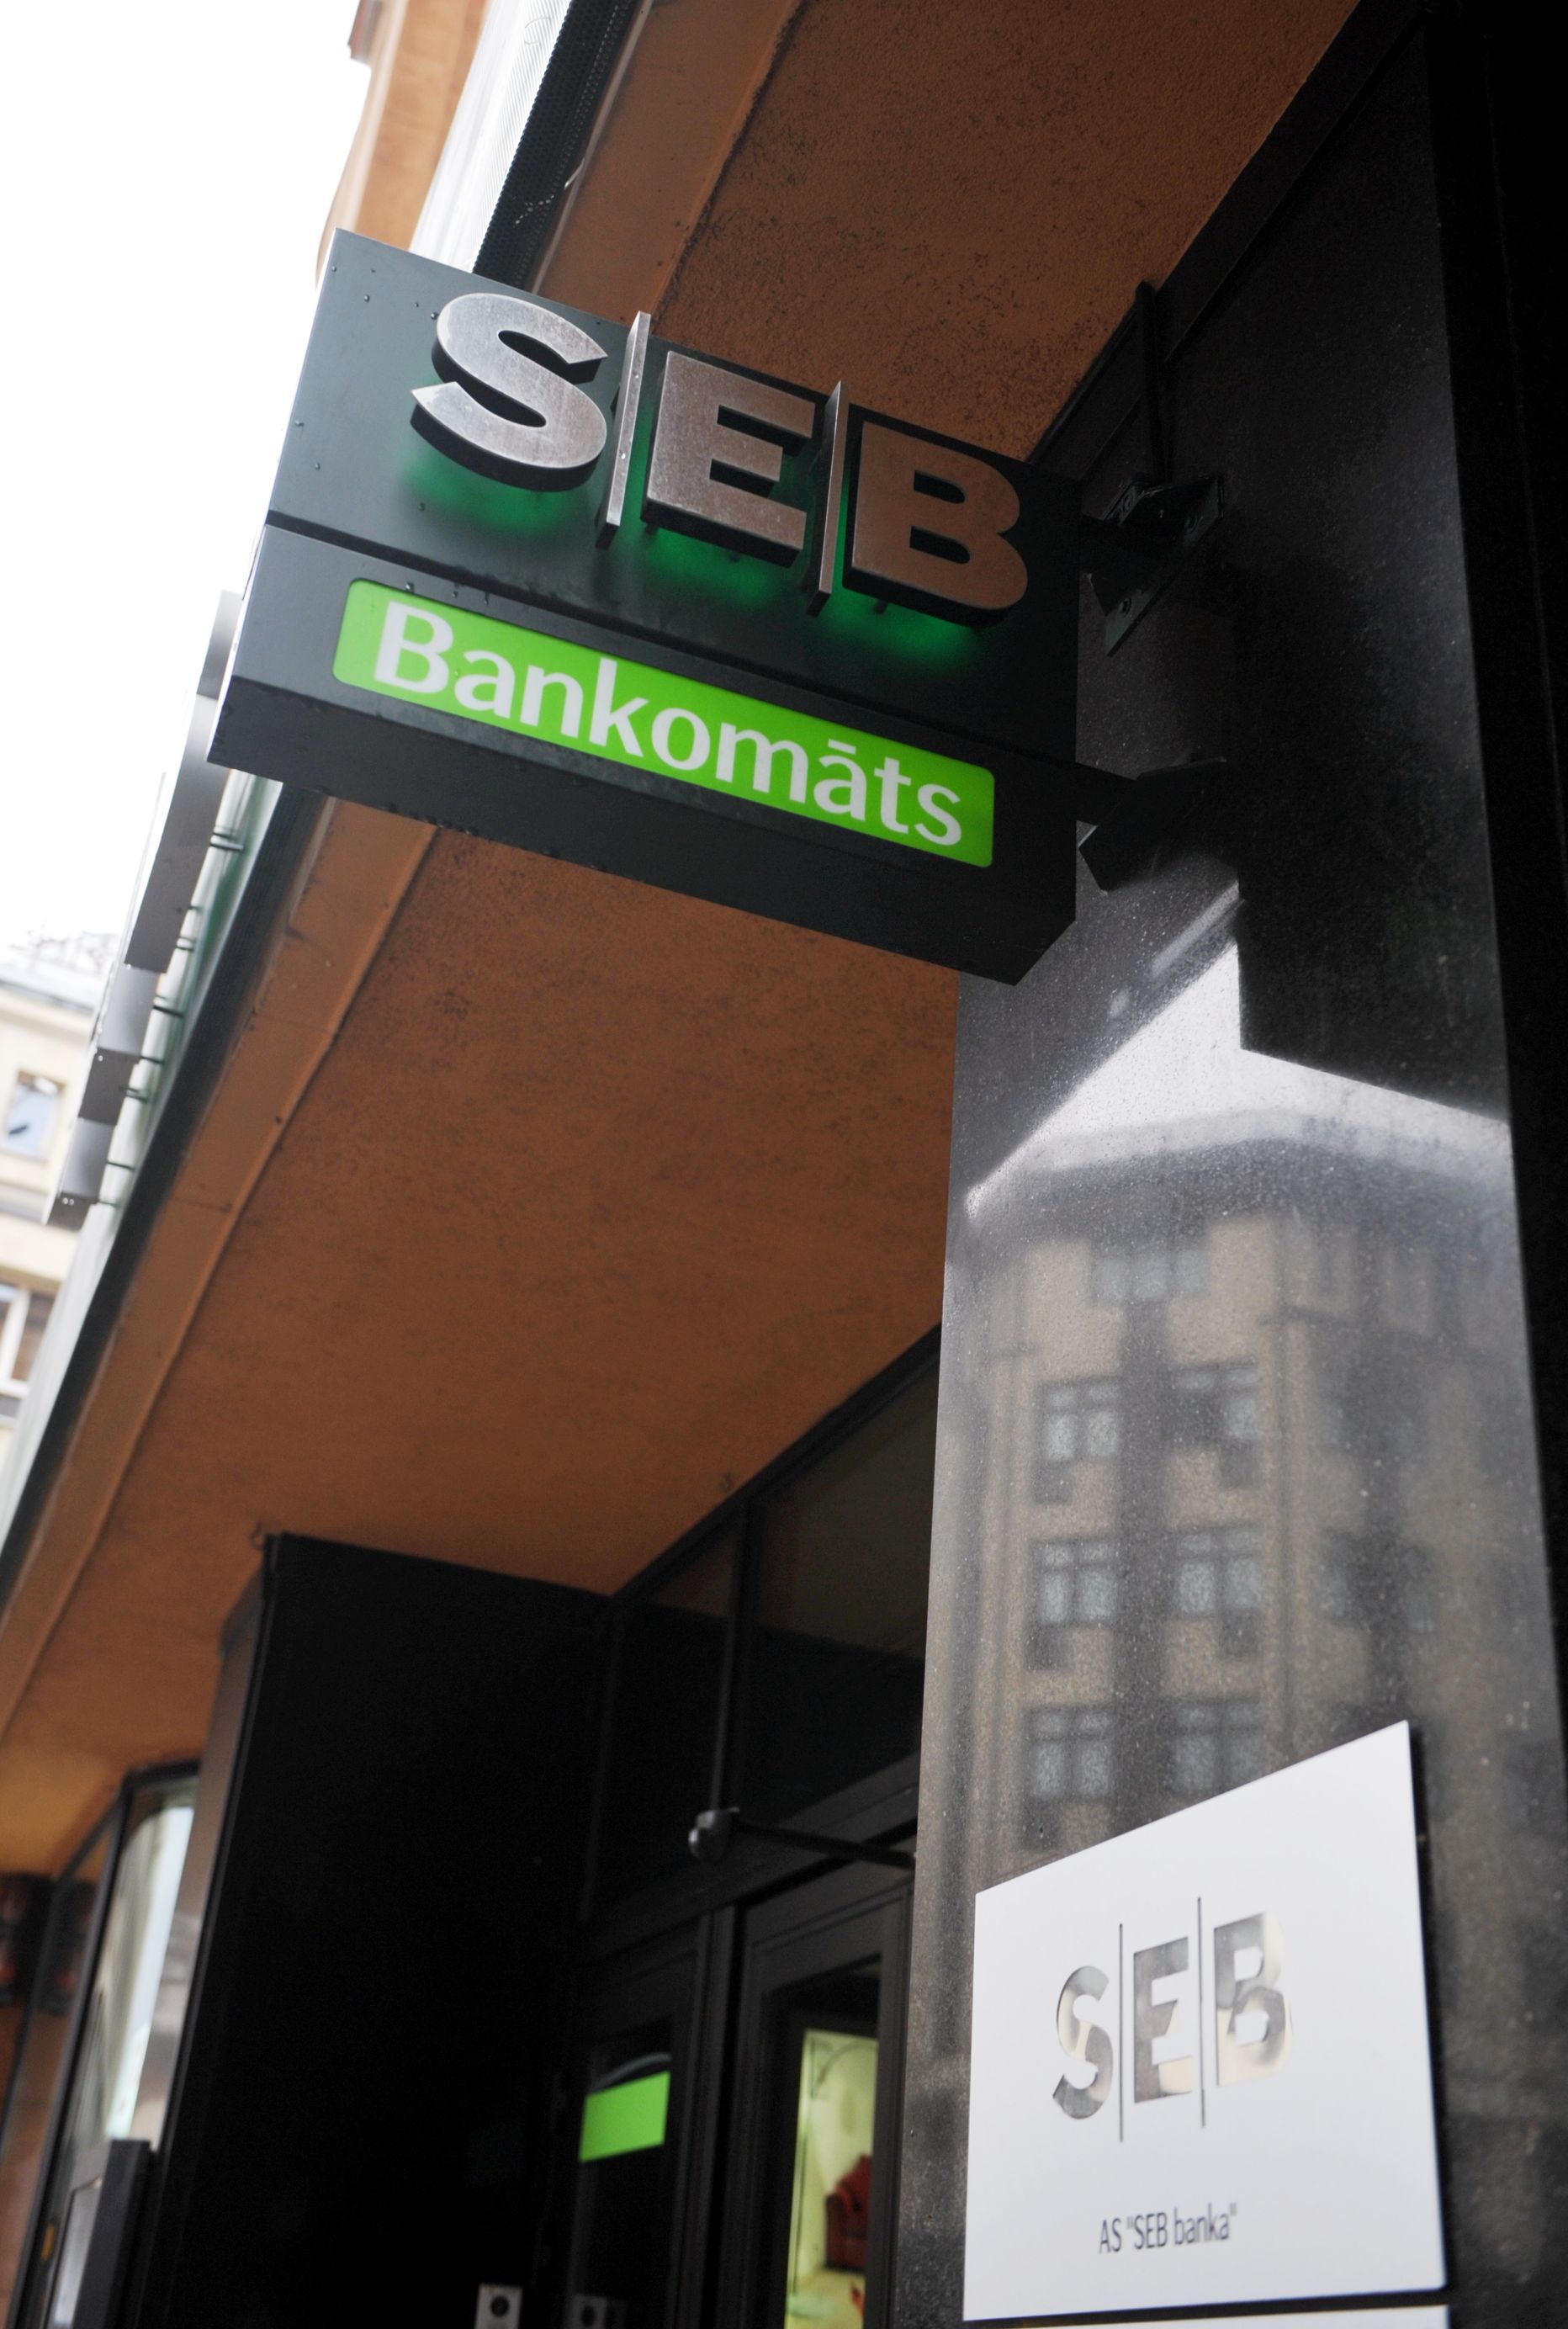 AS "SEB banka" izkārtne un bankomāts.